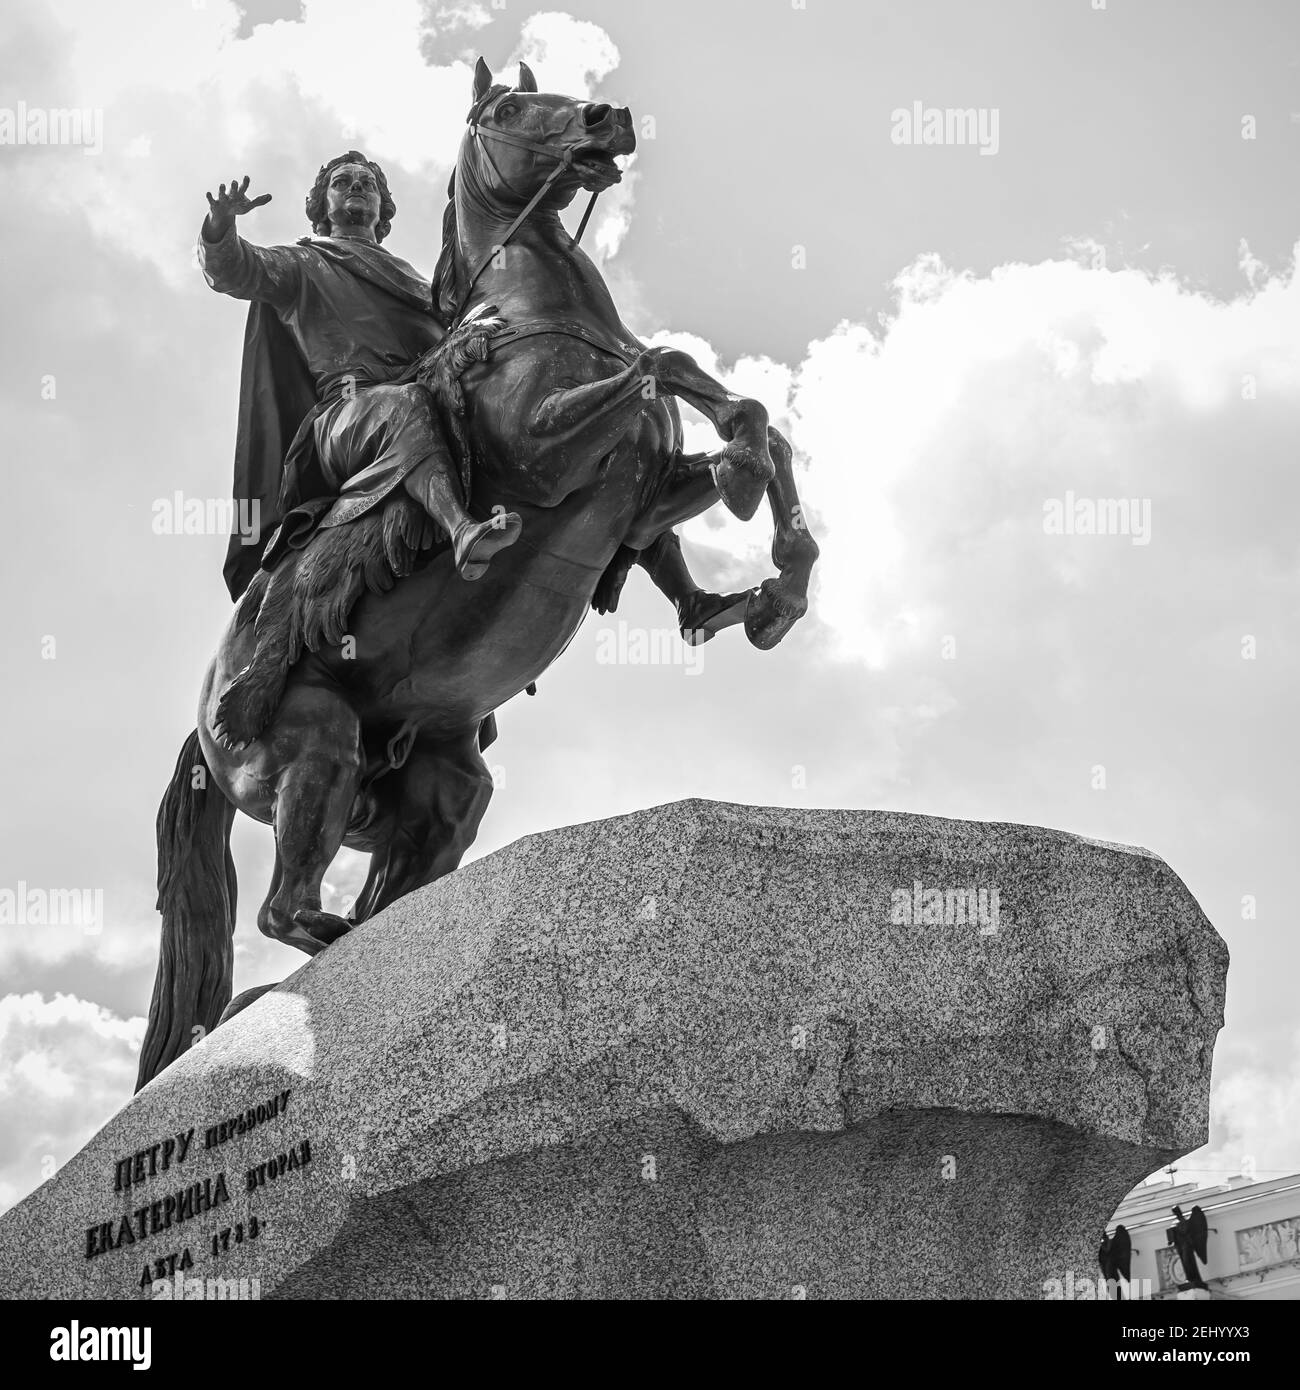 The Bronze Horseman - statue équestre de Pierre le Grand sur la place du Sénat à Saint-Pétersbourg, Russie. Monument et symbole de la ville. Noir Banque D'Images